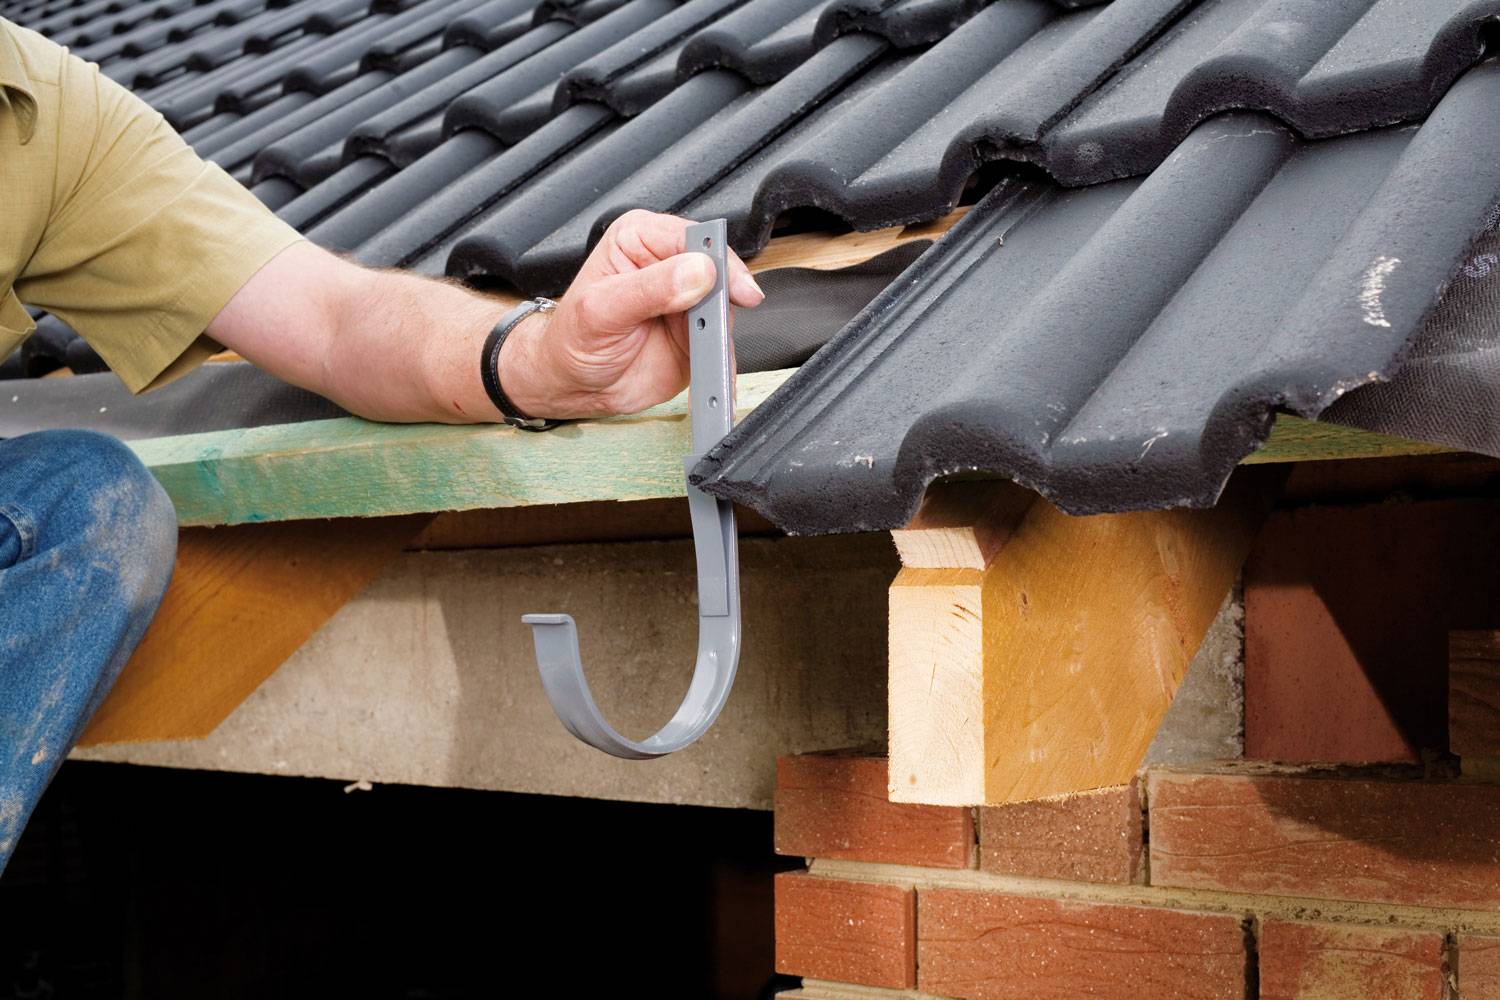 Как установить водостоки если крыша уже покрыта - рассматриваем варианты монтажа, как установить правильно